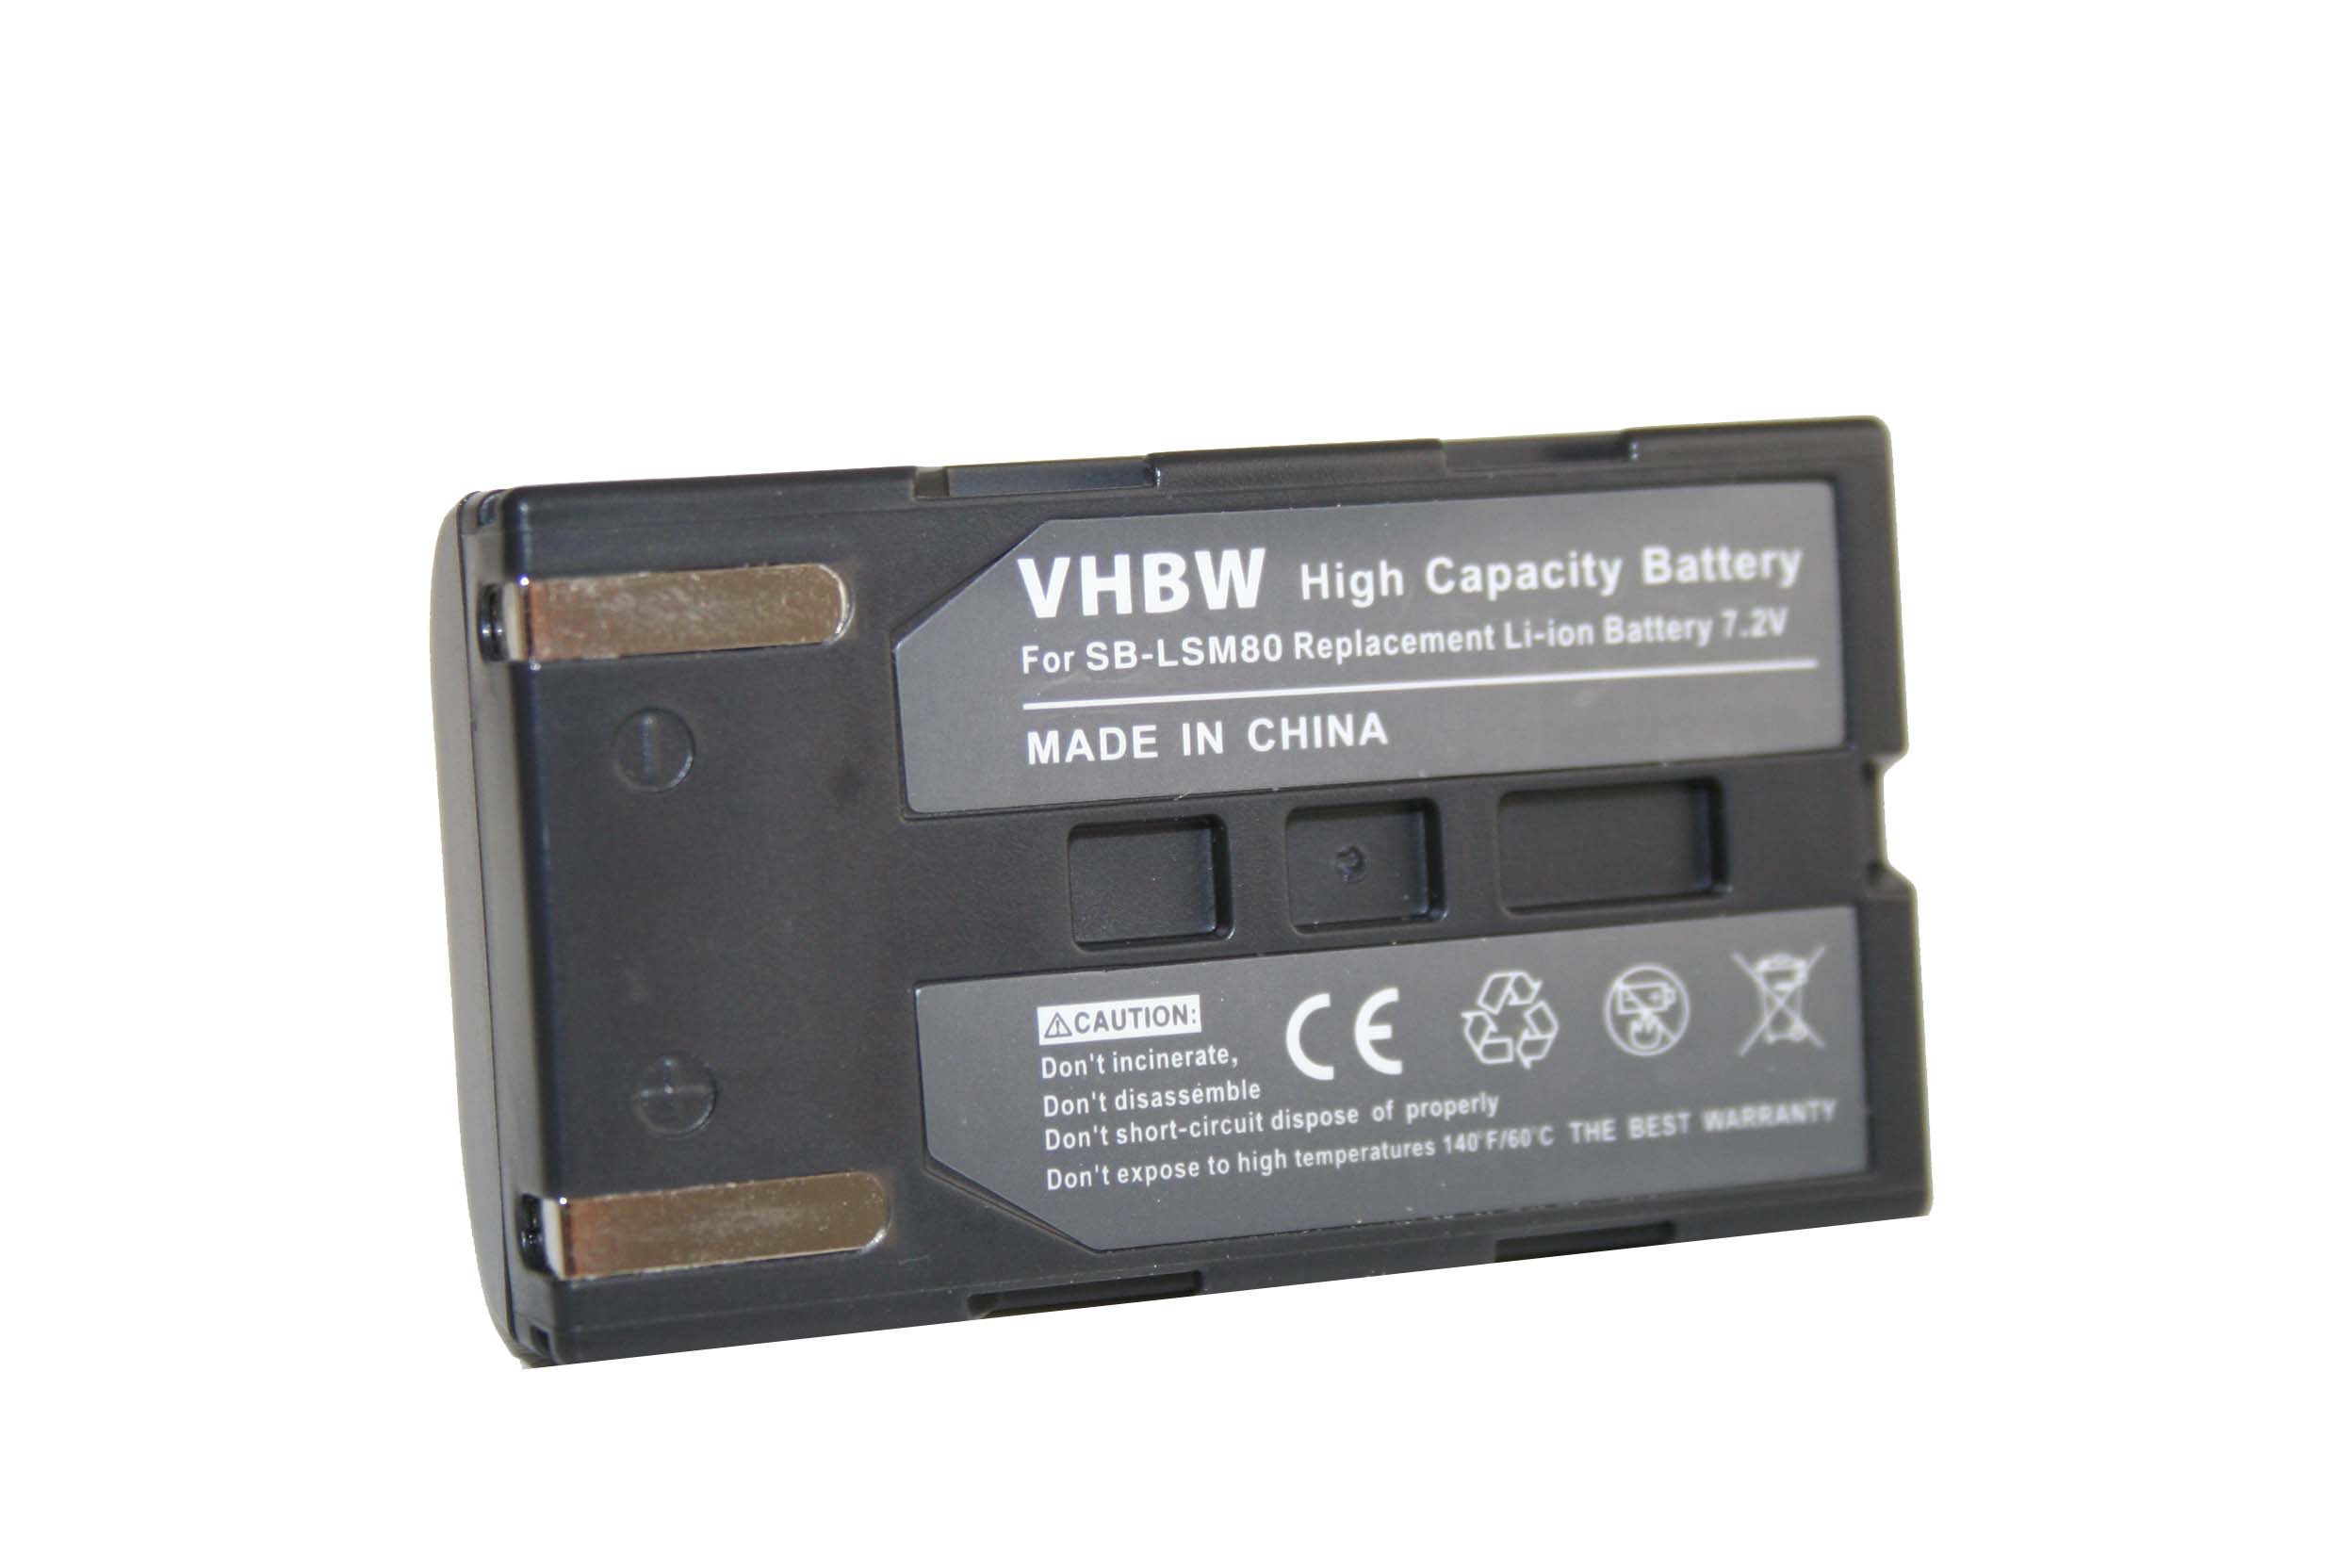 VHBW kompatibel mit Samsung VP-D354i, VP-D354 Videokamera, VP-D355, Li-Ion - VP-D355i, VP-D361W, Akku VP-D361, VP-D362, 7.2 600 Volt